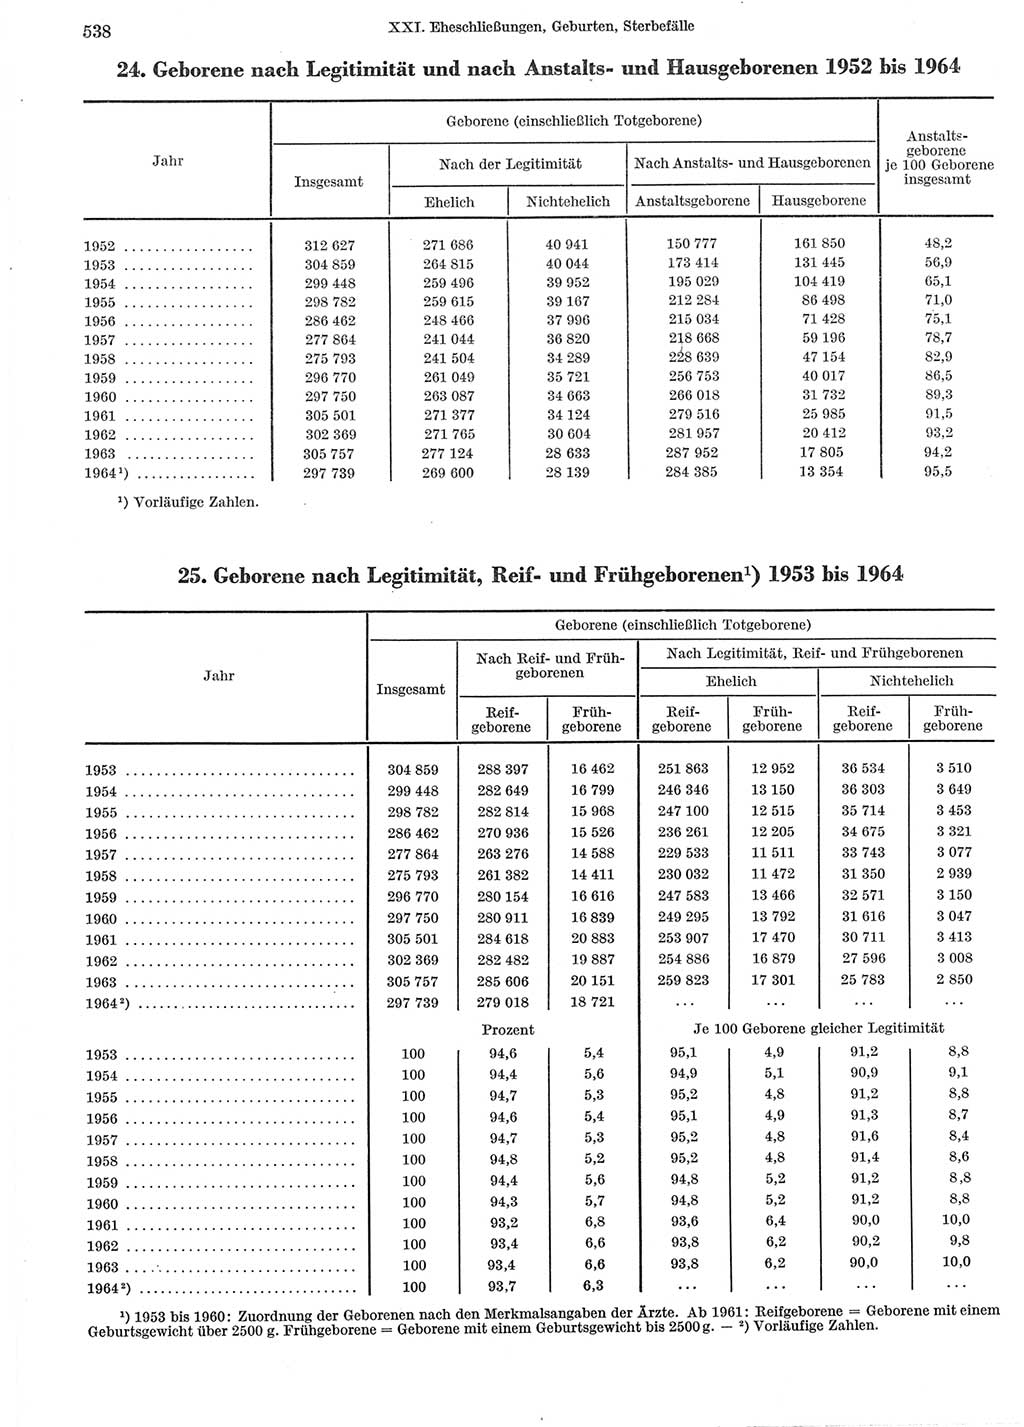 Statistisches Jahrbuch der Deutschen Demokratischen Republik (DDR) 1965, Seite 538 (Stat. Jb. DDR 1965, S. 538)